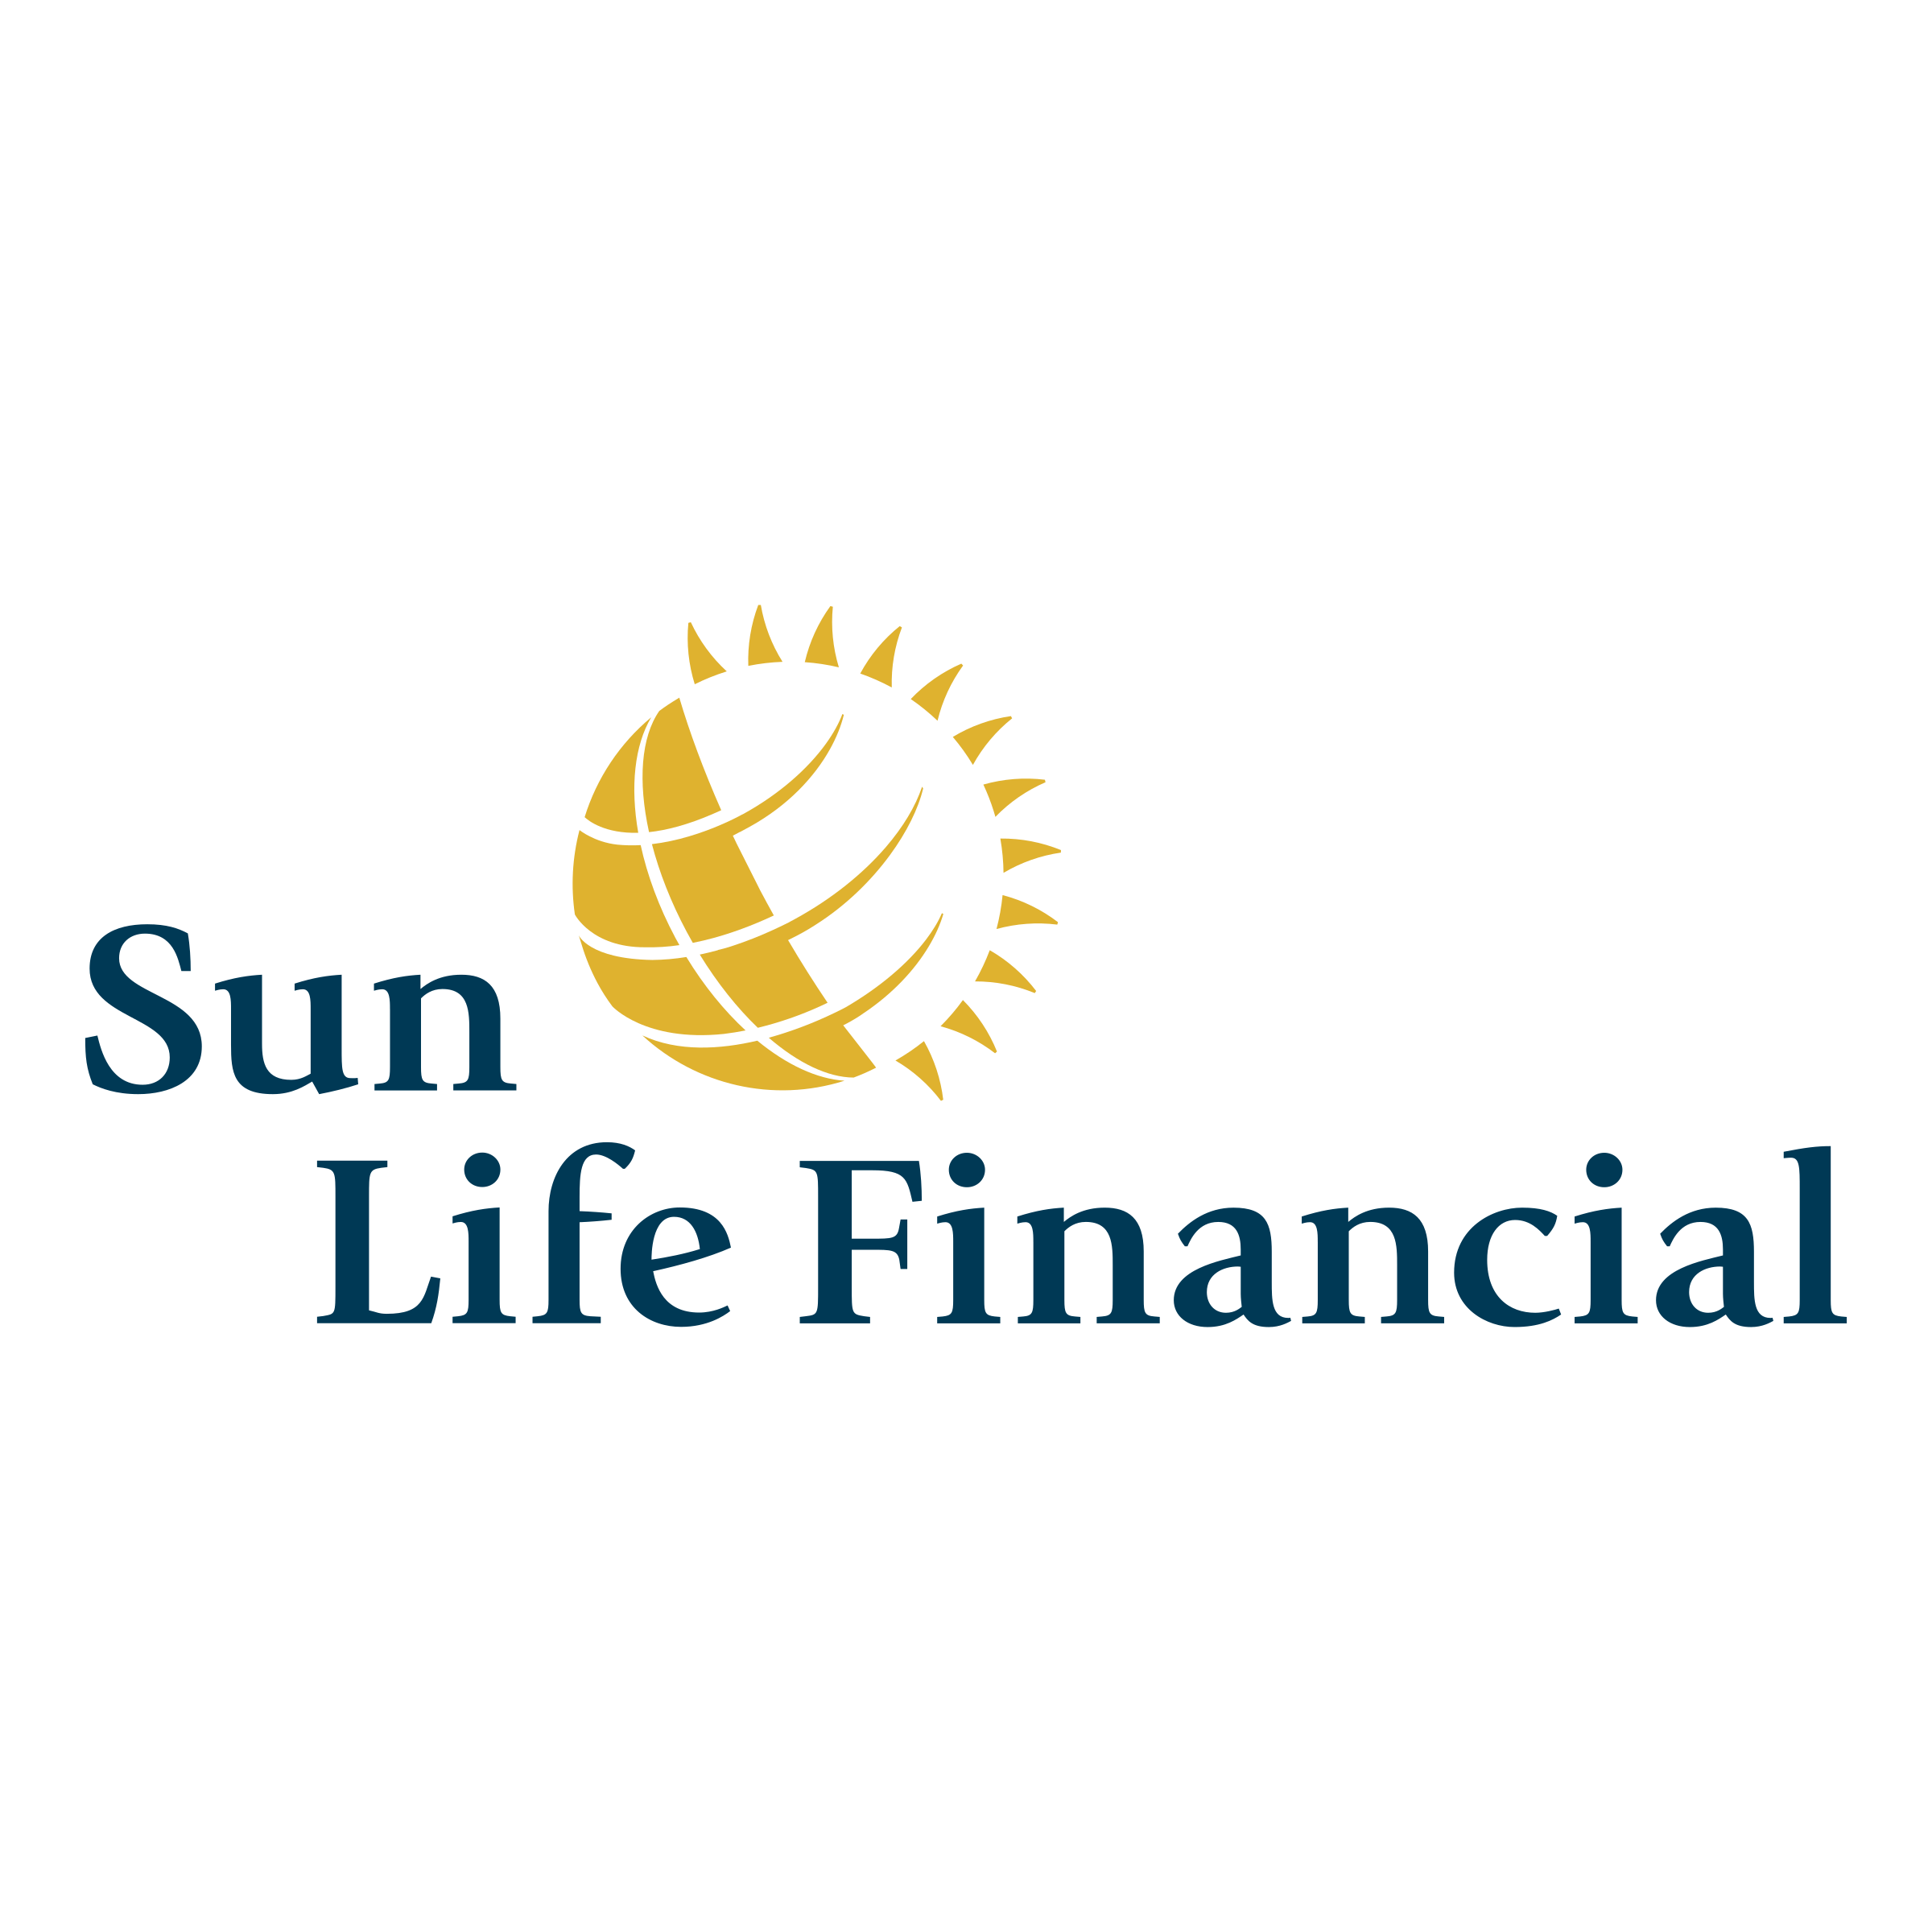 sun-life-financial-1-logo-png-transparent.png